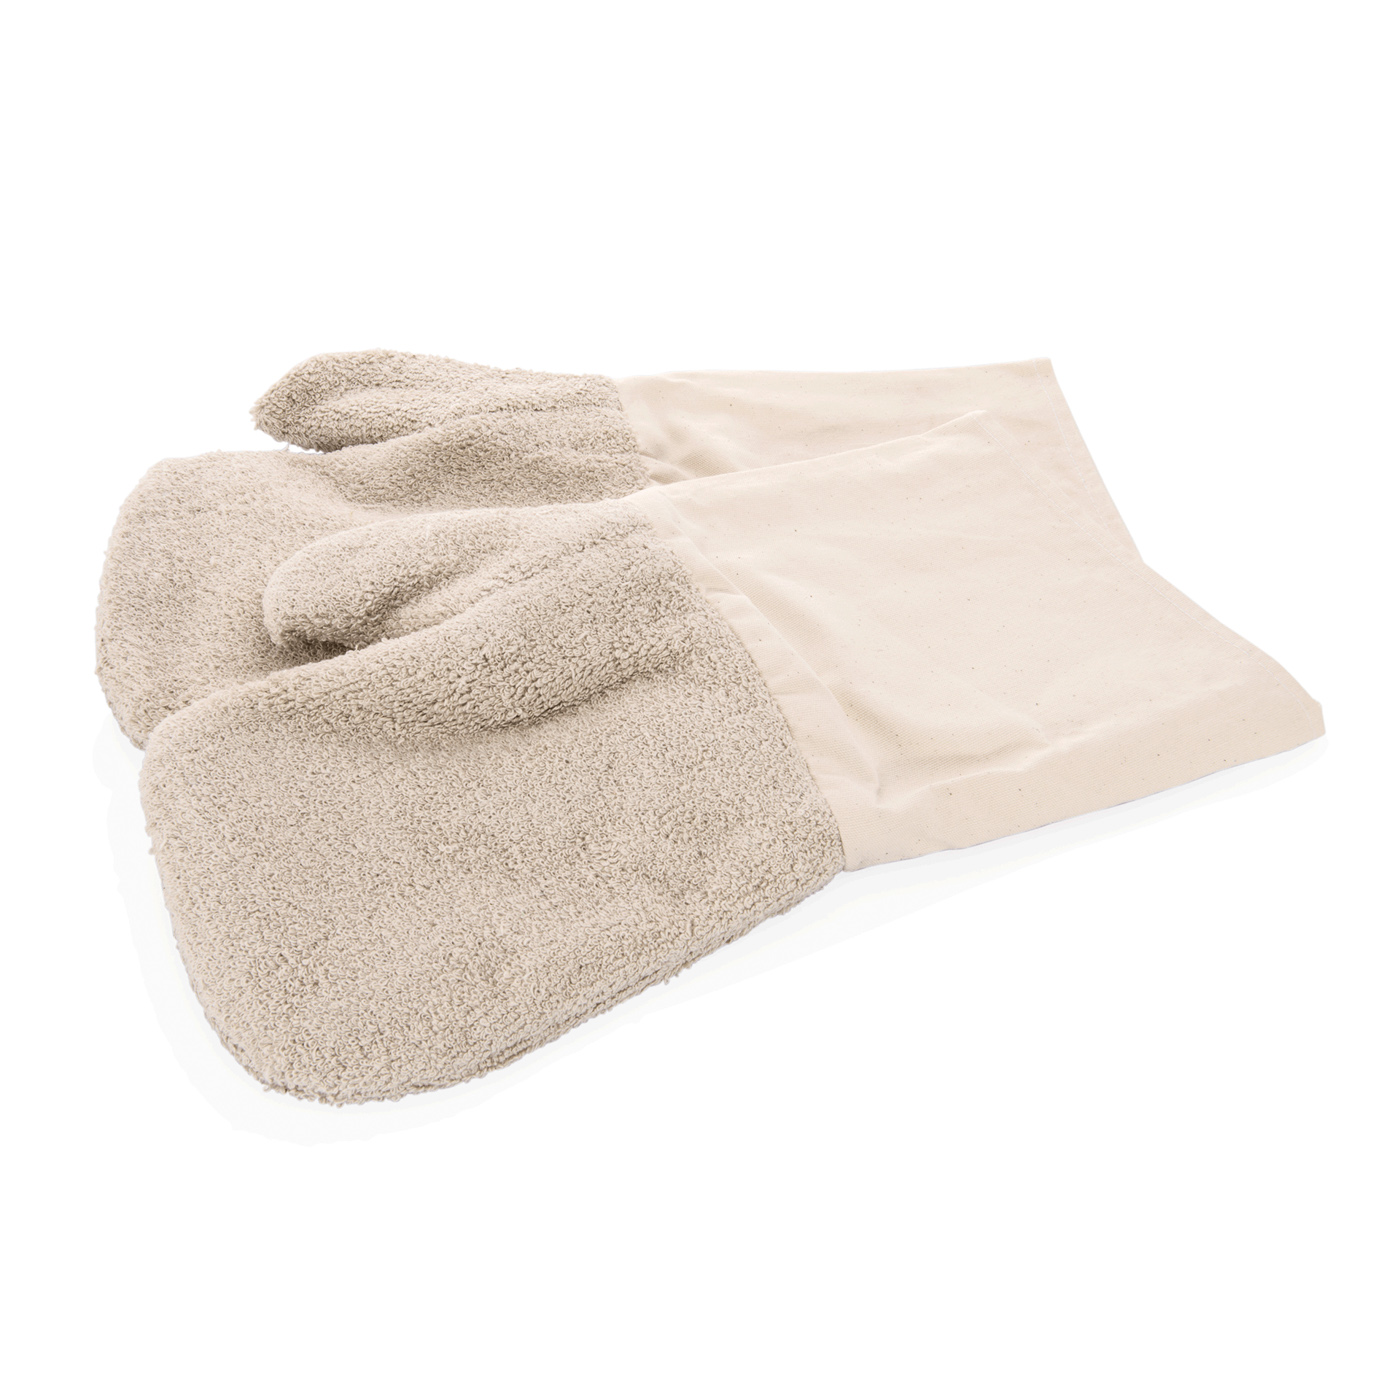 Hitzefausthandschuhe. Baumwolle. 2-teilig, temperaturbeständig bis 350 °C, waschbar bis